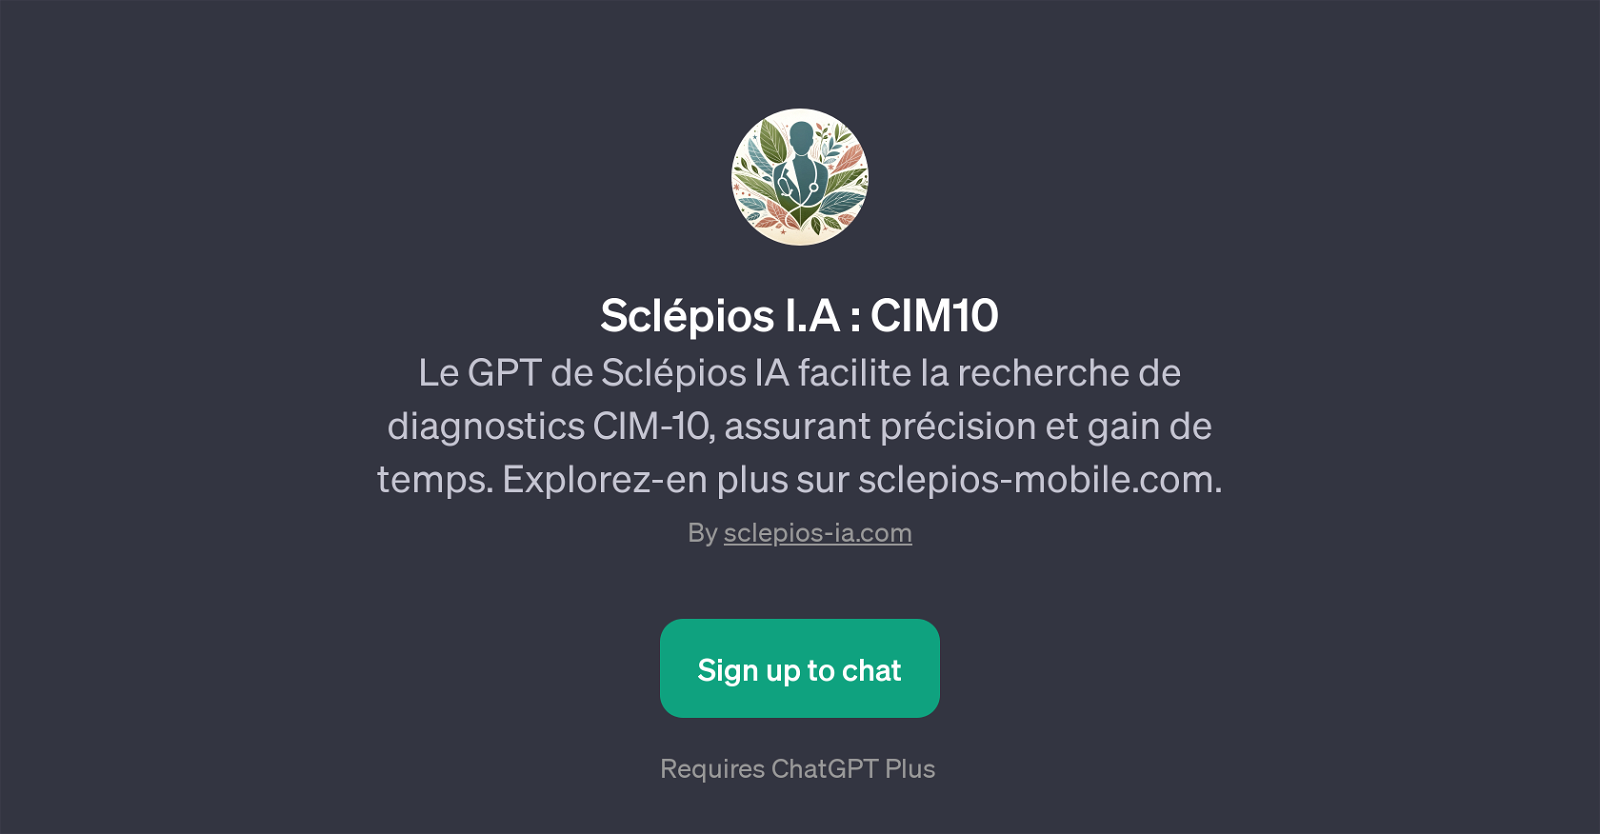 Sclpios I.A : CIM10 website